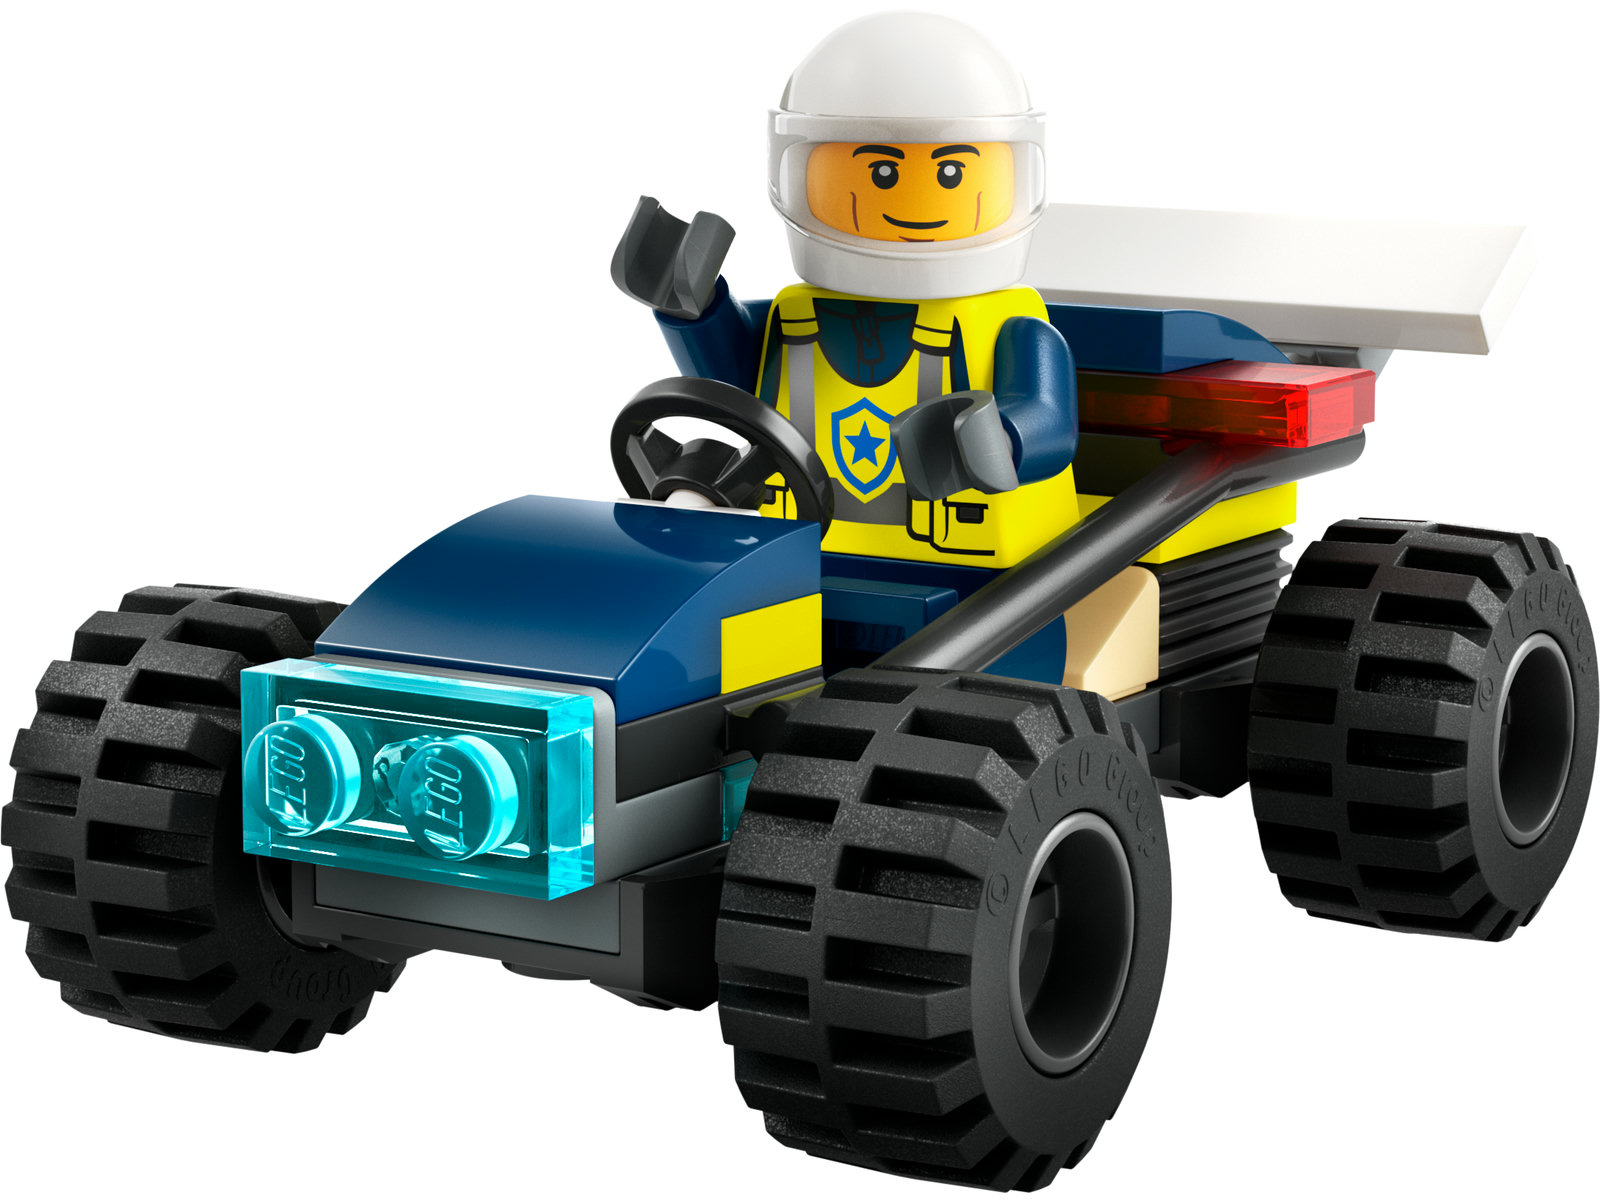 LEGO® City 30664 - Polizei-Geländebuggy